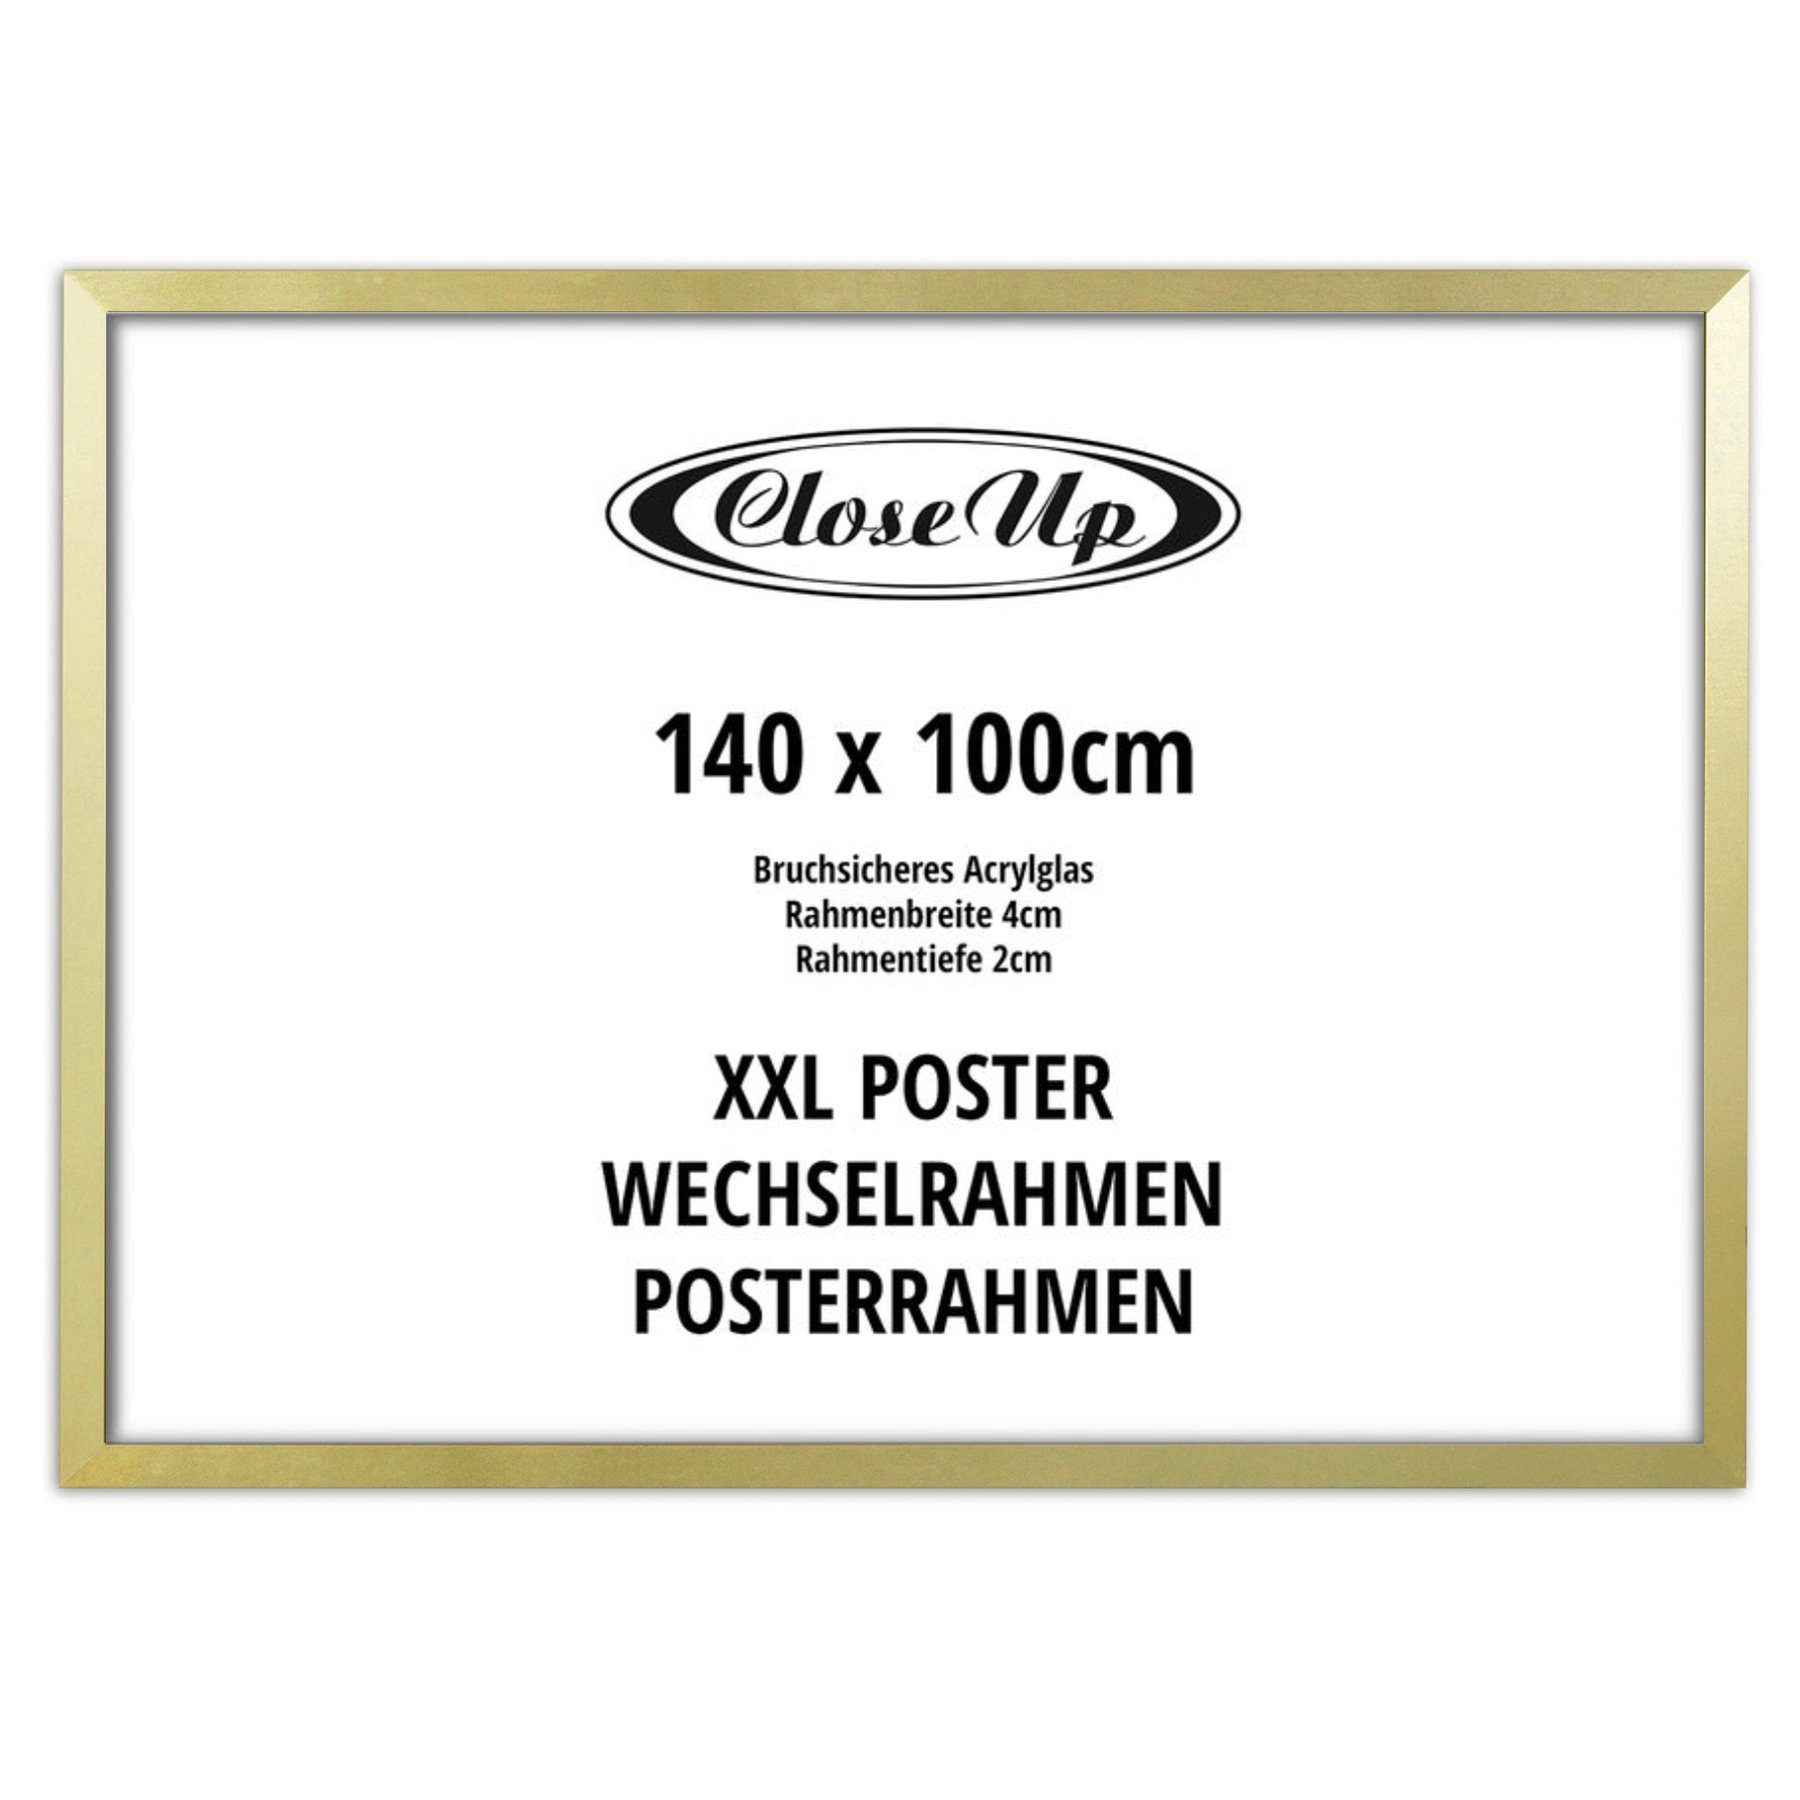 Close Up Bilderrahmen XXL Posterrahmen 100 x 140cm gold